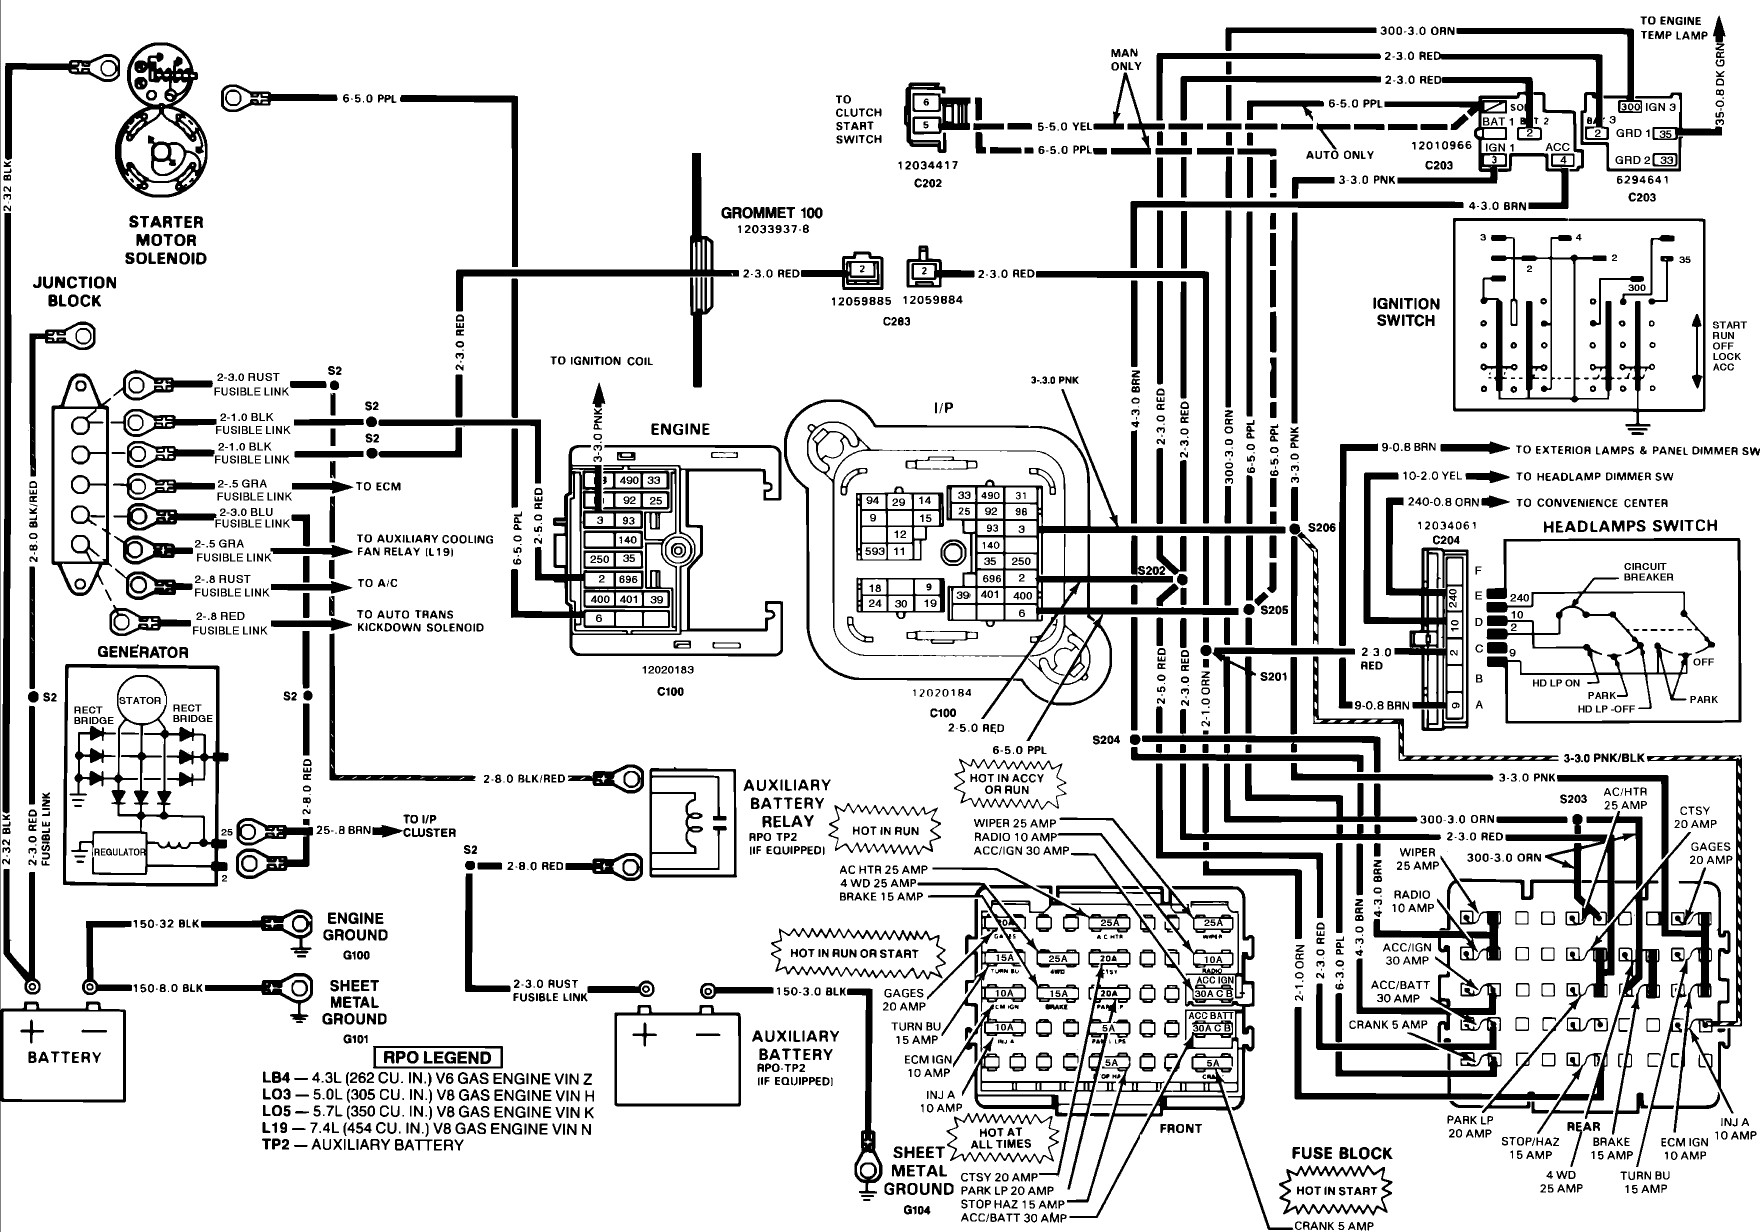 Engine Schematic Diagram 1988 Gmc Truck Wiring Diagram 88 Gmc Safari Engine Diagram Of Engine Schematic Diagram